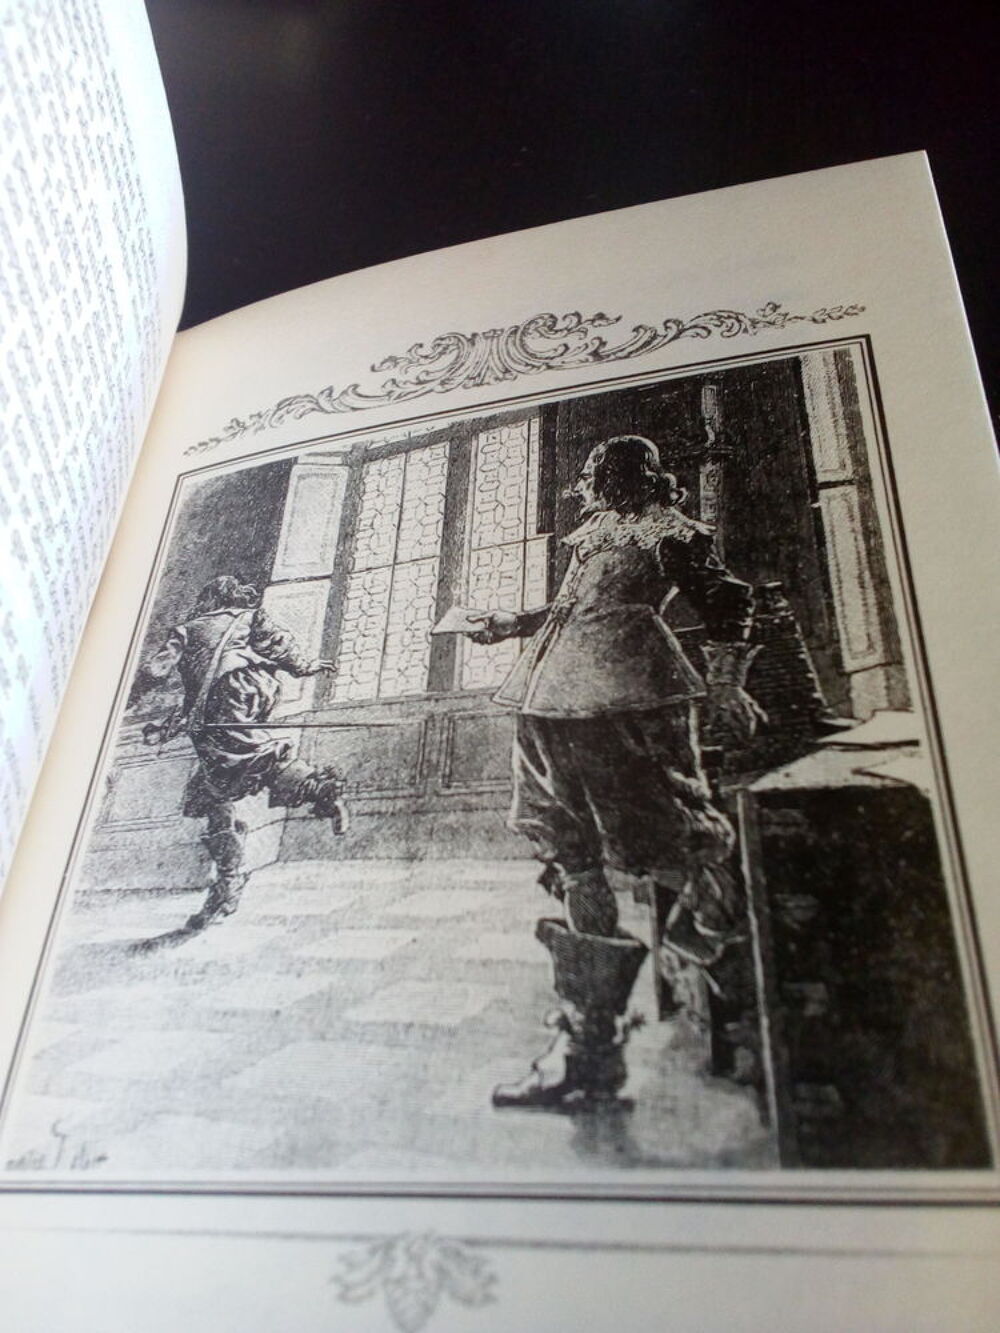  Les trois mousquetaires Alexandre Dumas tome 1 Livres et BD